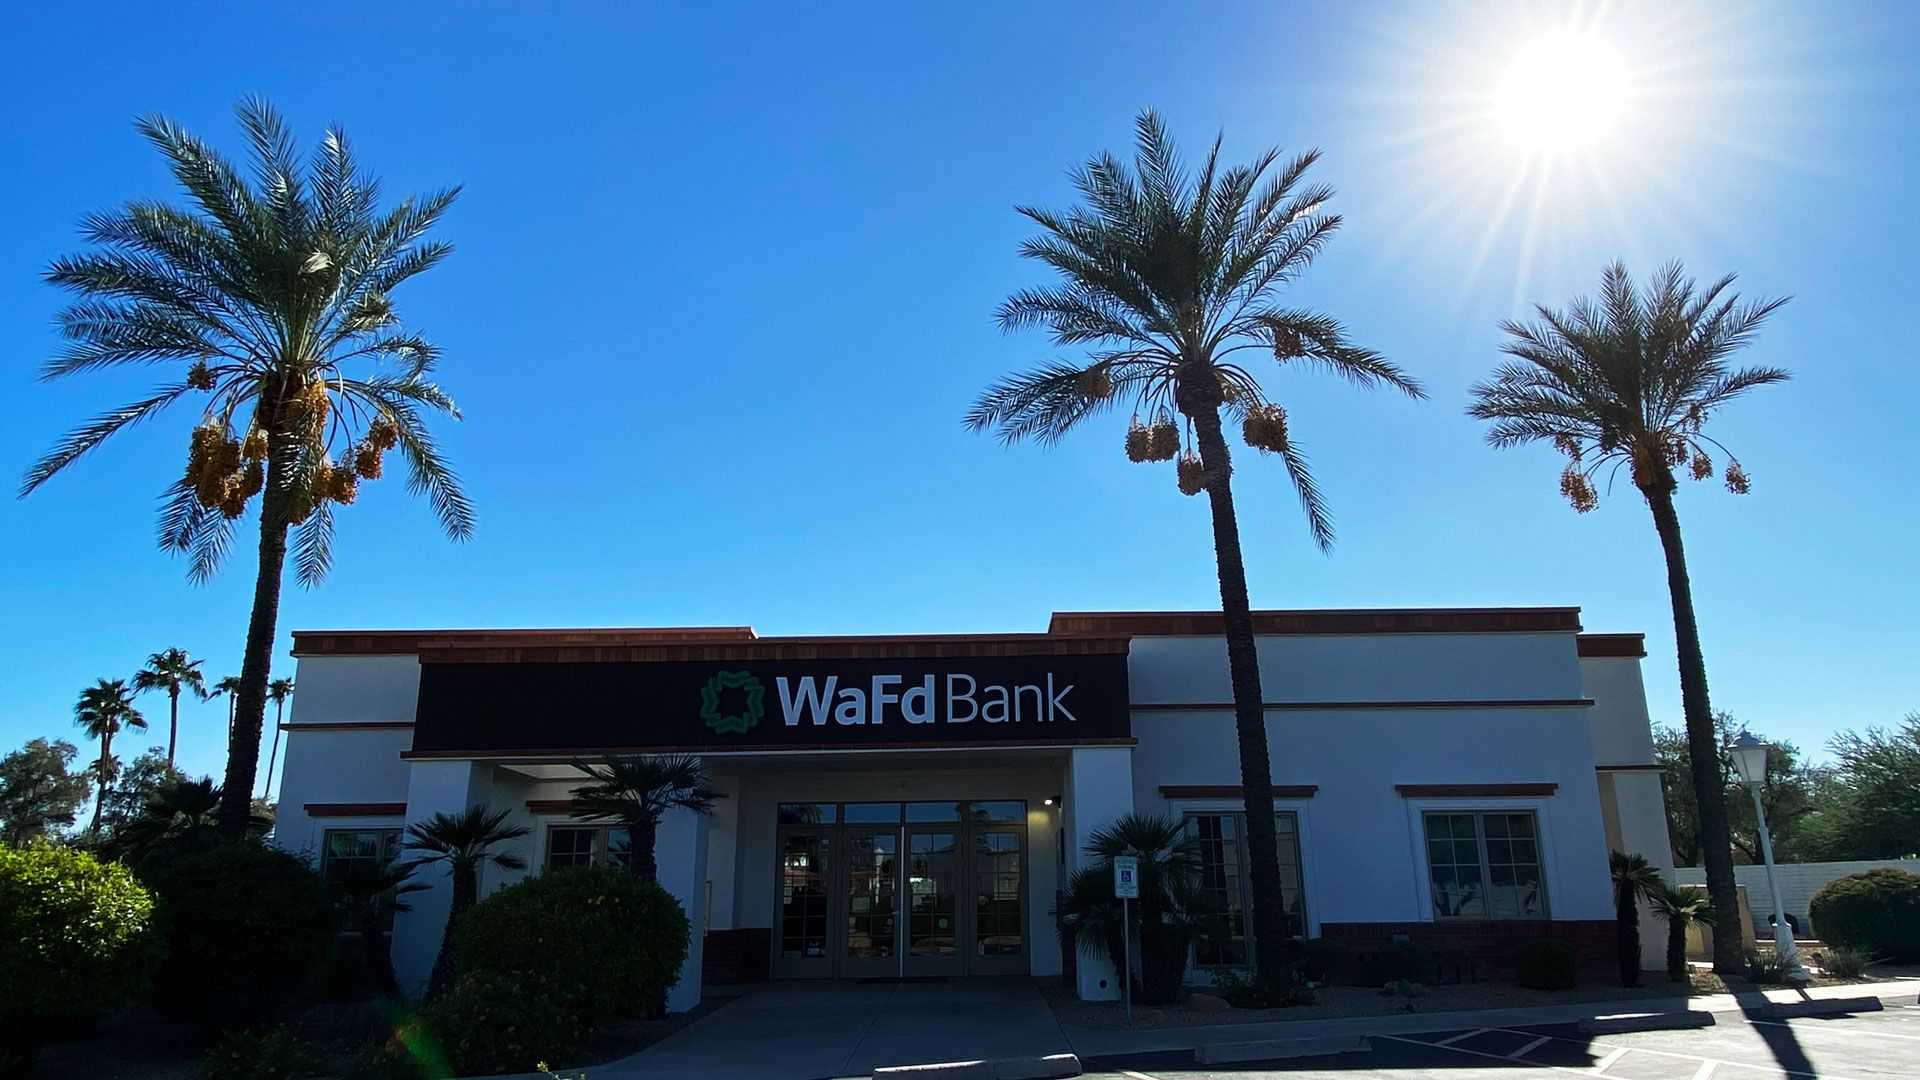 WaFd Bank in Sun City, Arizona #1126 - Washington Federal.